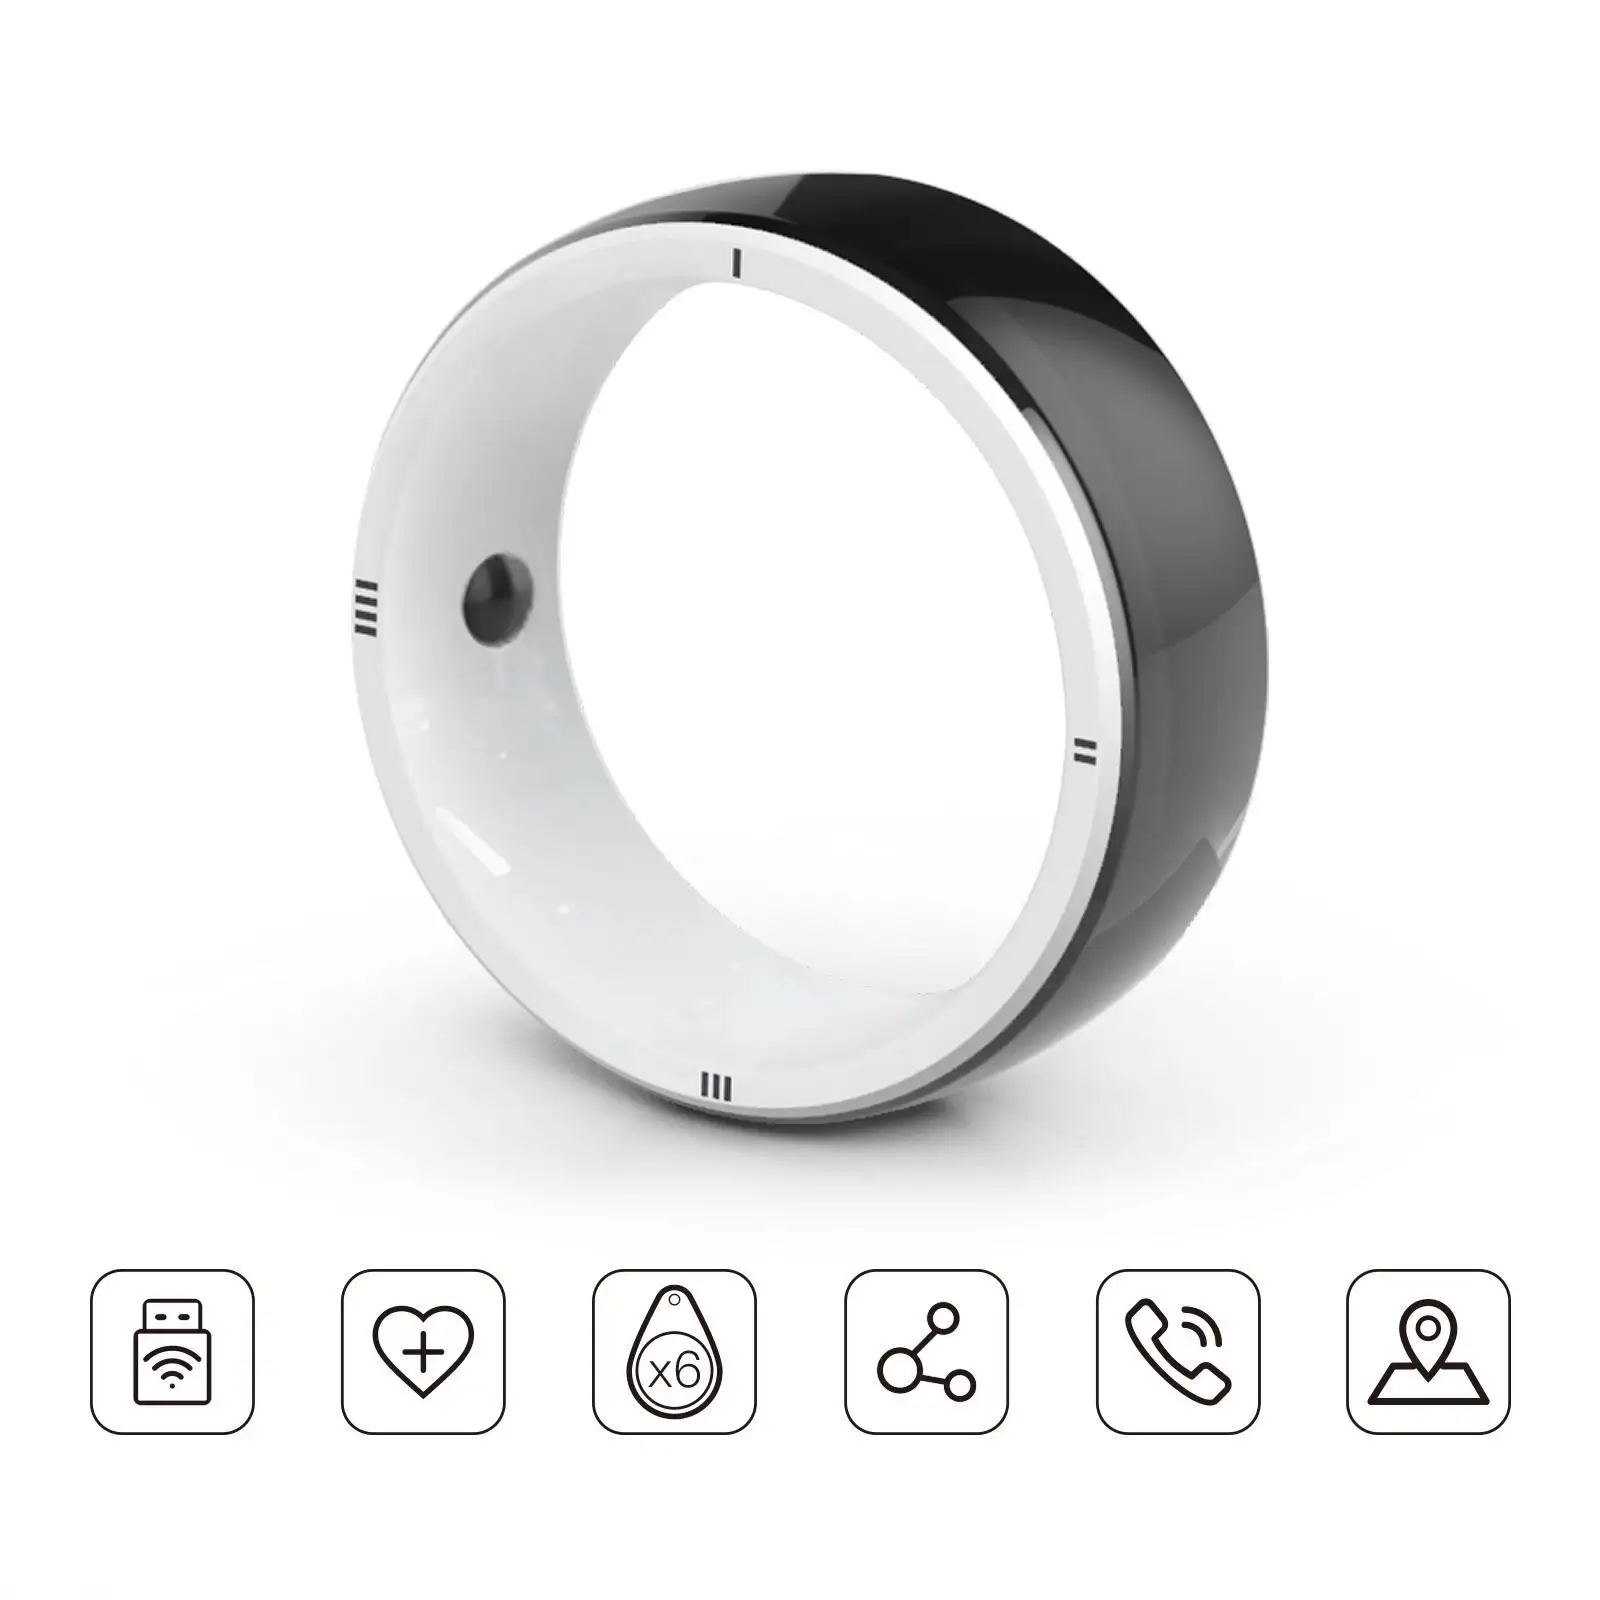 Anillo inteligente JAKCOM R5, nuevo anillo inteligente que combina con sintonizadores de vapor, punta de goteo, películas de Bollywood 2019, tarjeta de sonido de estudio barata, pago por uso